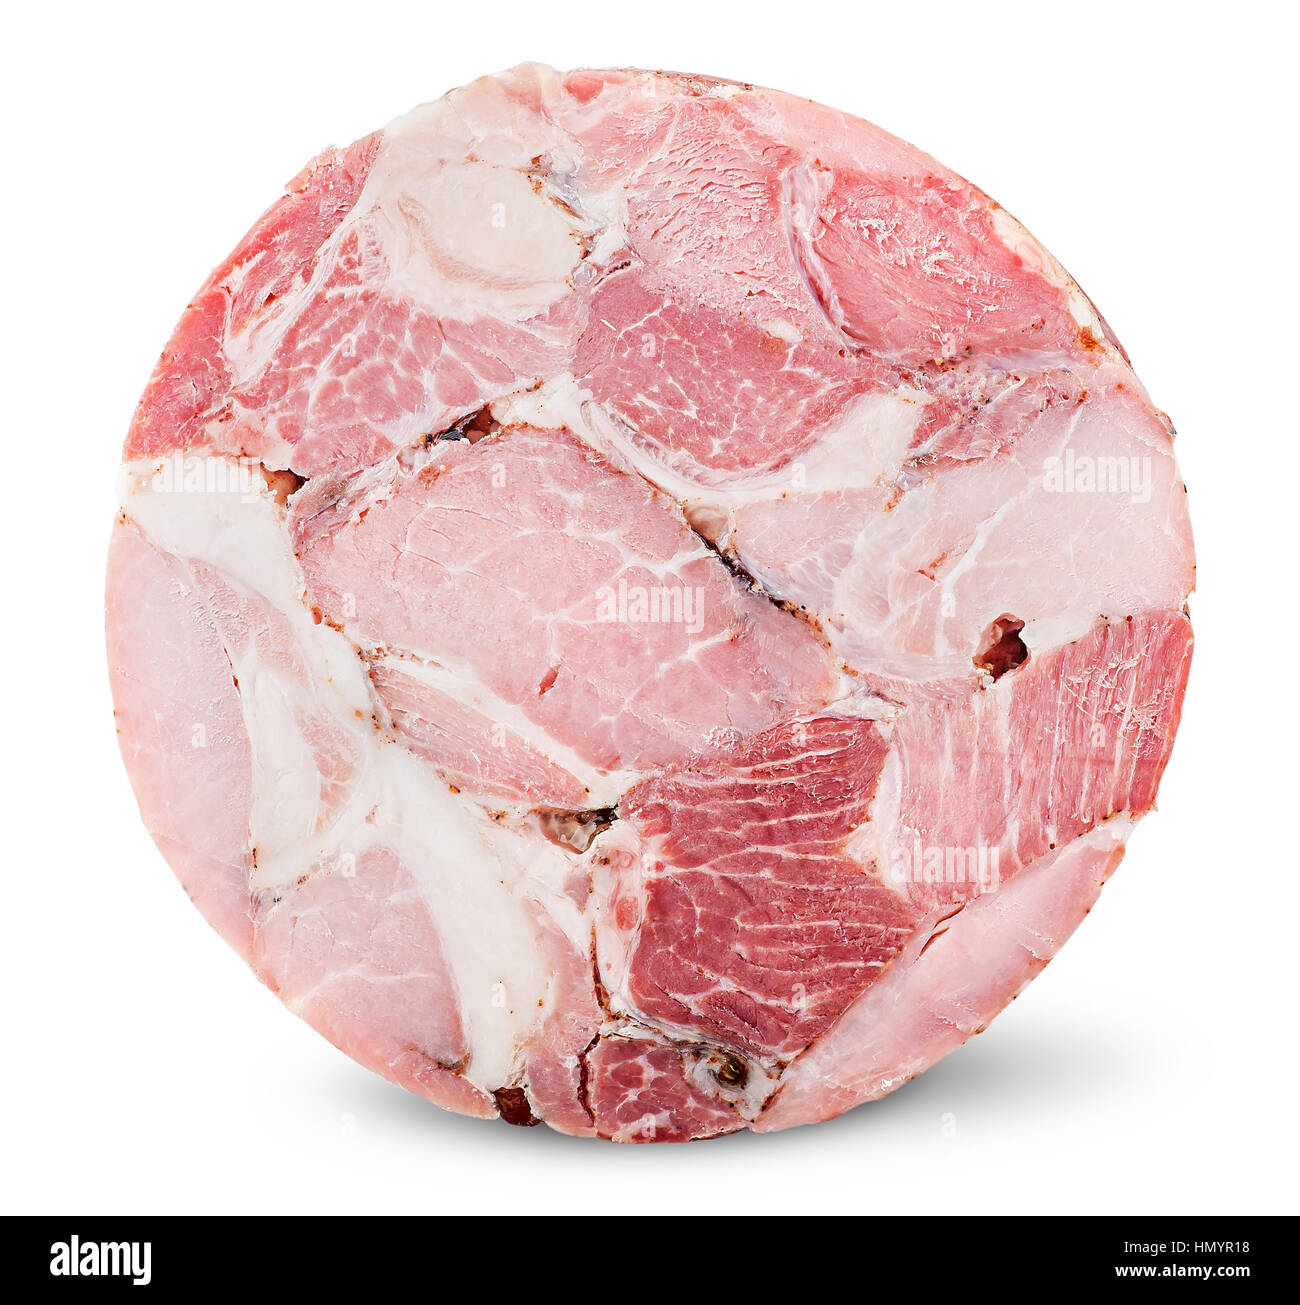 Cut slice of ham isolated on white background Stock Photo